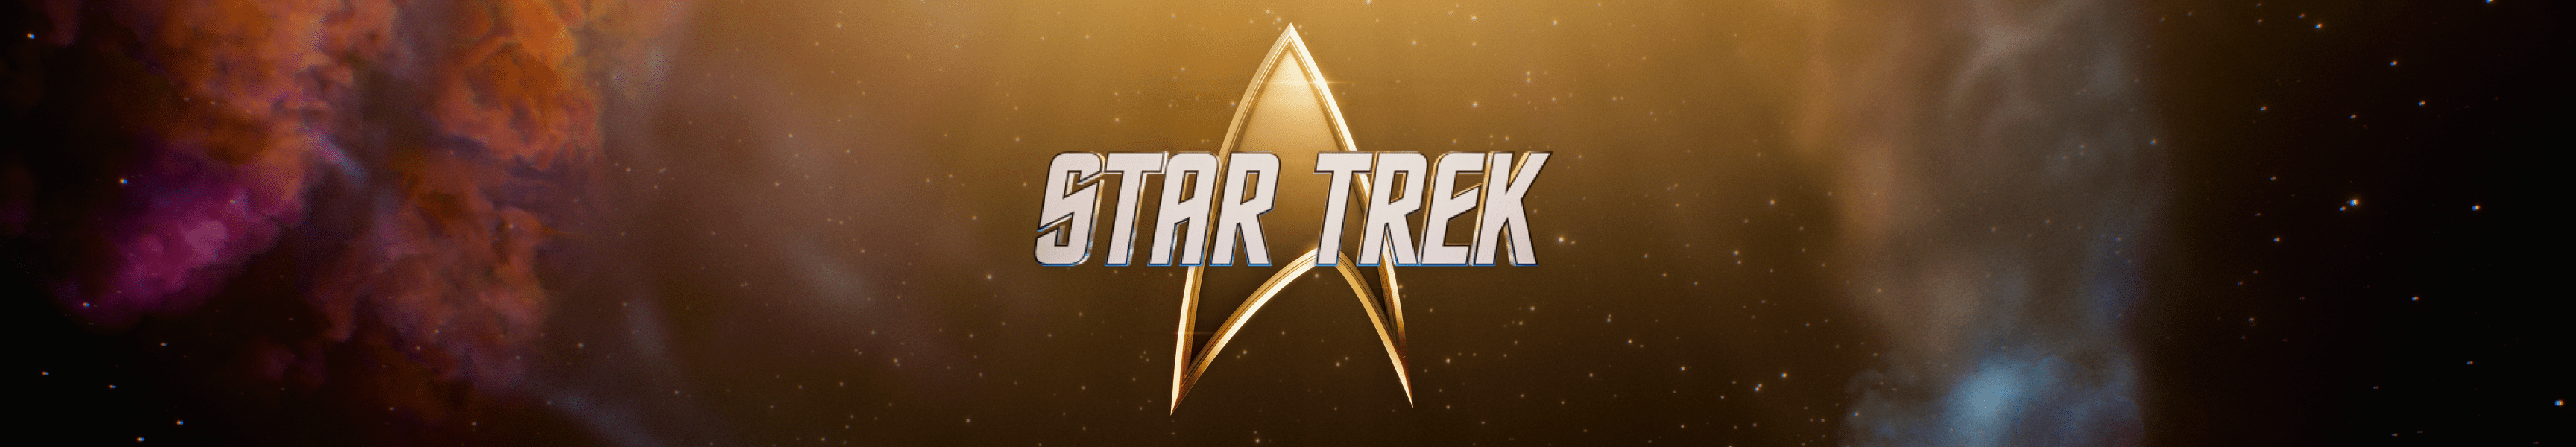 Star Trek Regalos por menos de 50